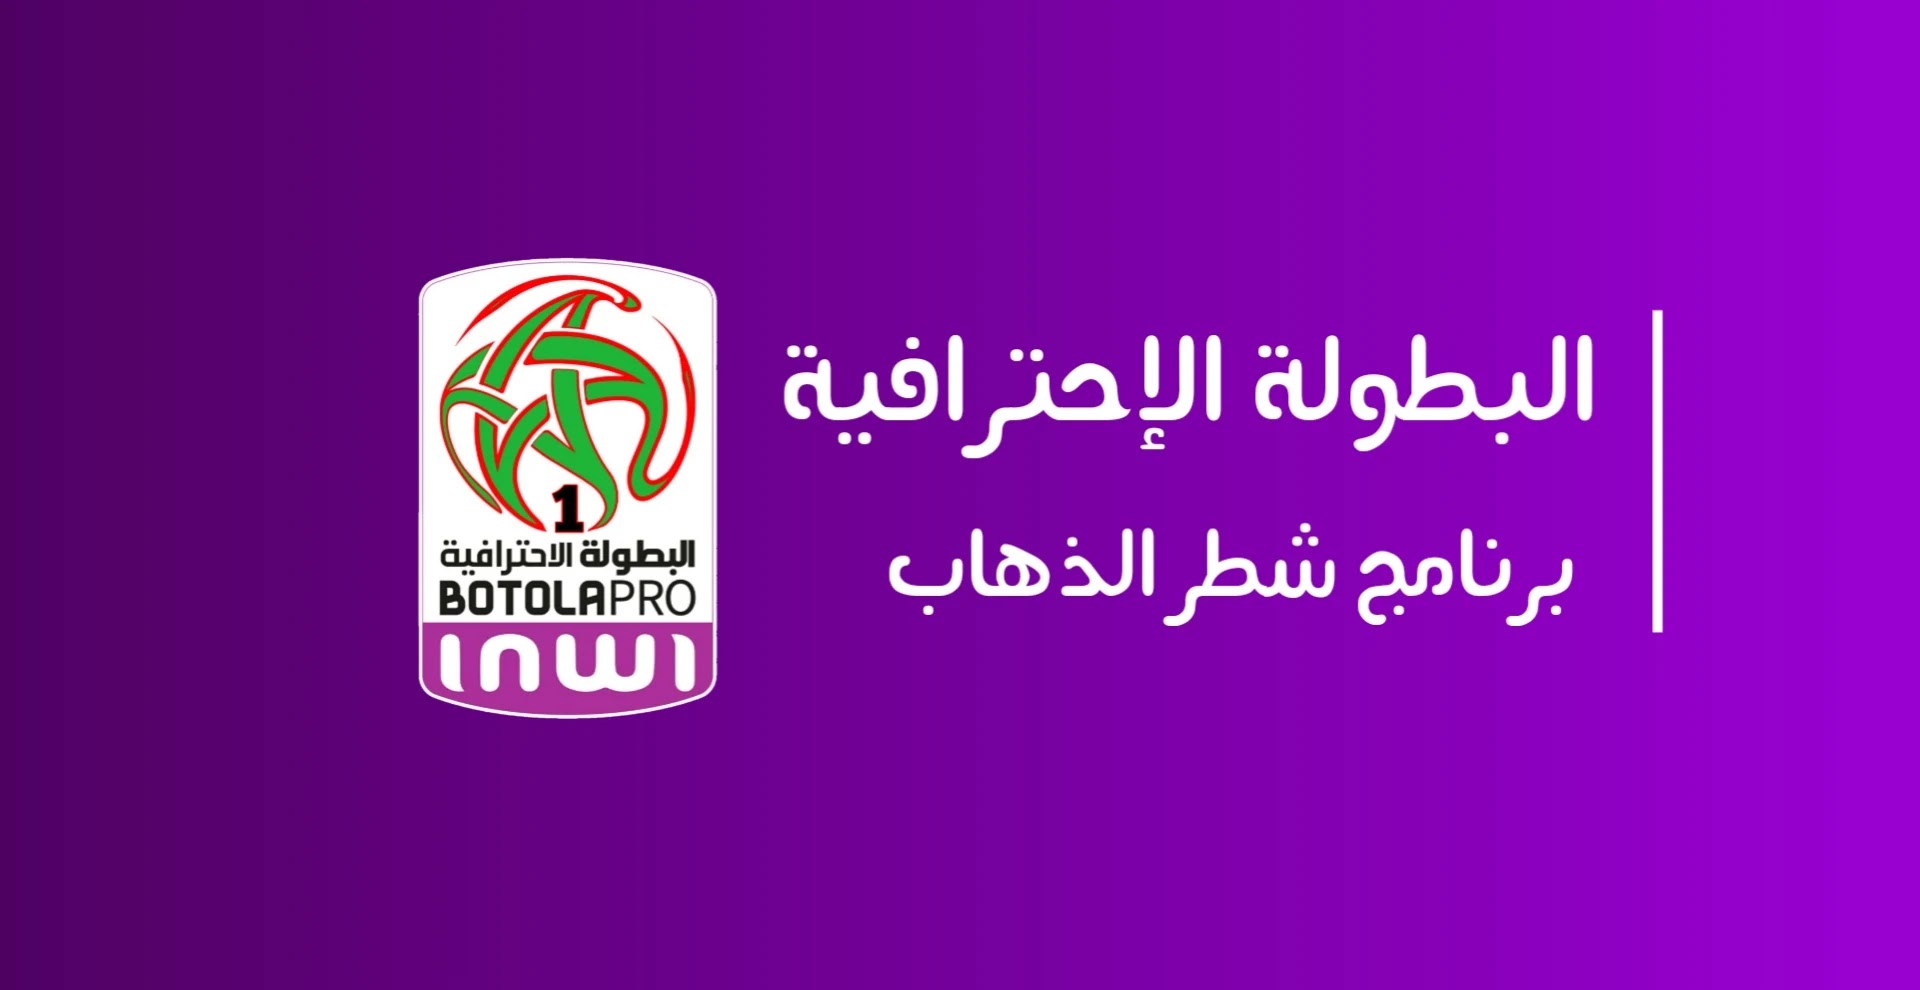 ترتيب الدوري المغربي 2021 اليوم - ترتيب الدوري المغربي 2021 - ترتيب الدوري المغربي 2021 الان - ترتيب الدوري المغربي القسم الأول 2021 - ترتيب الدوري المغربي 2021 حاليا